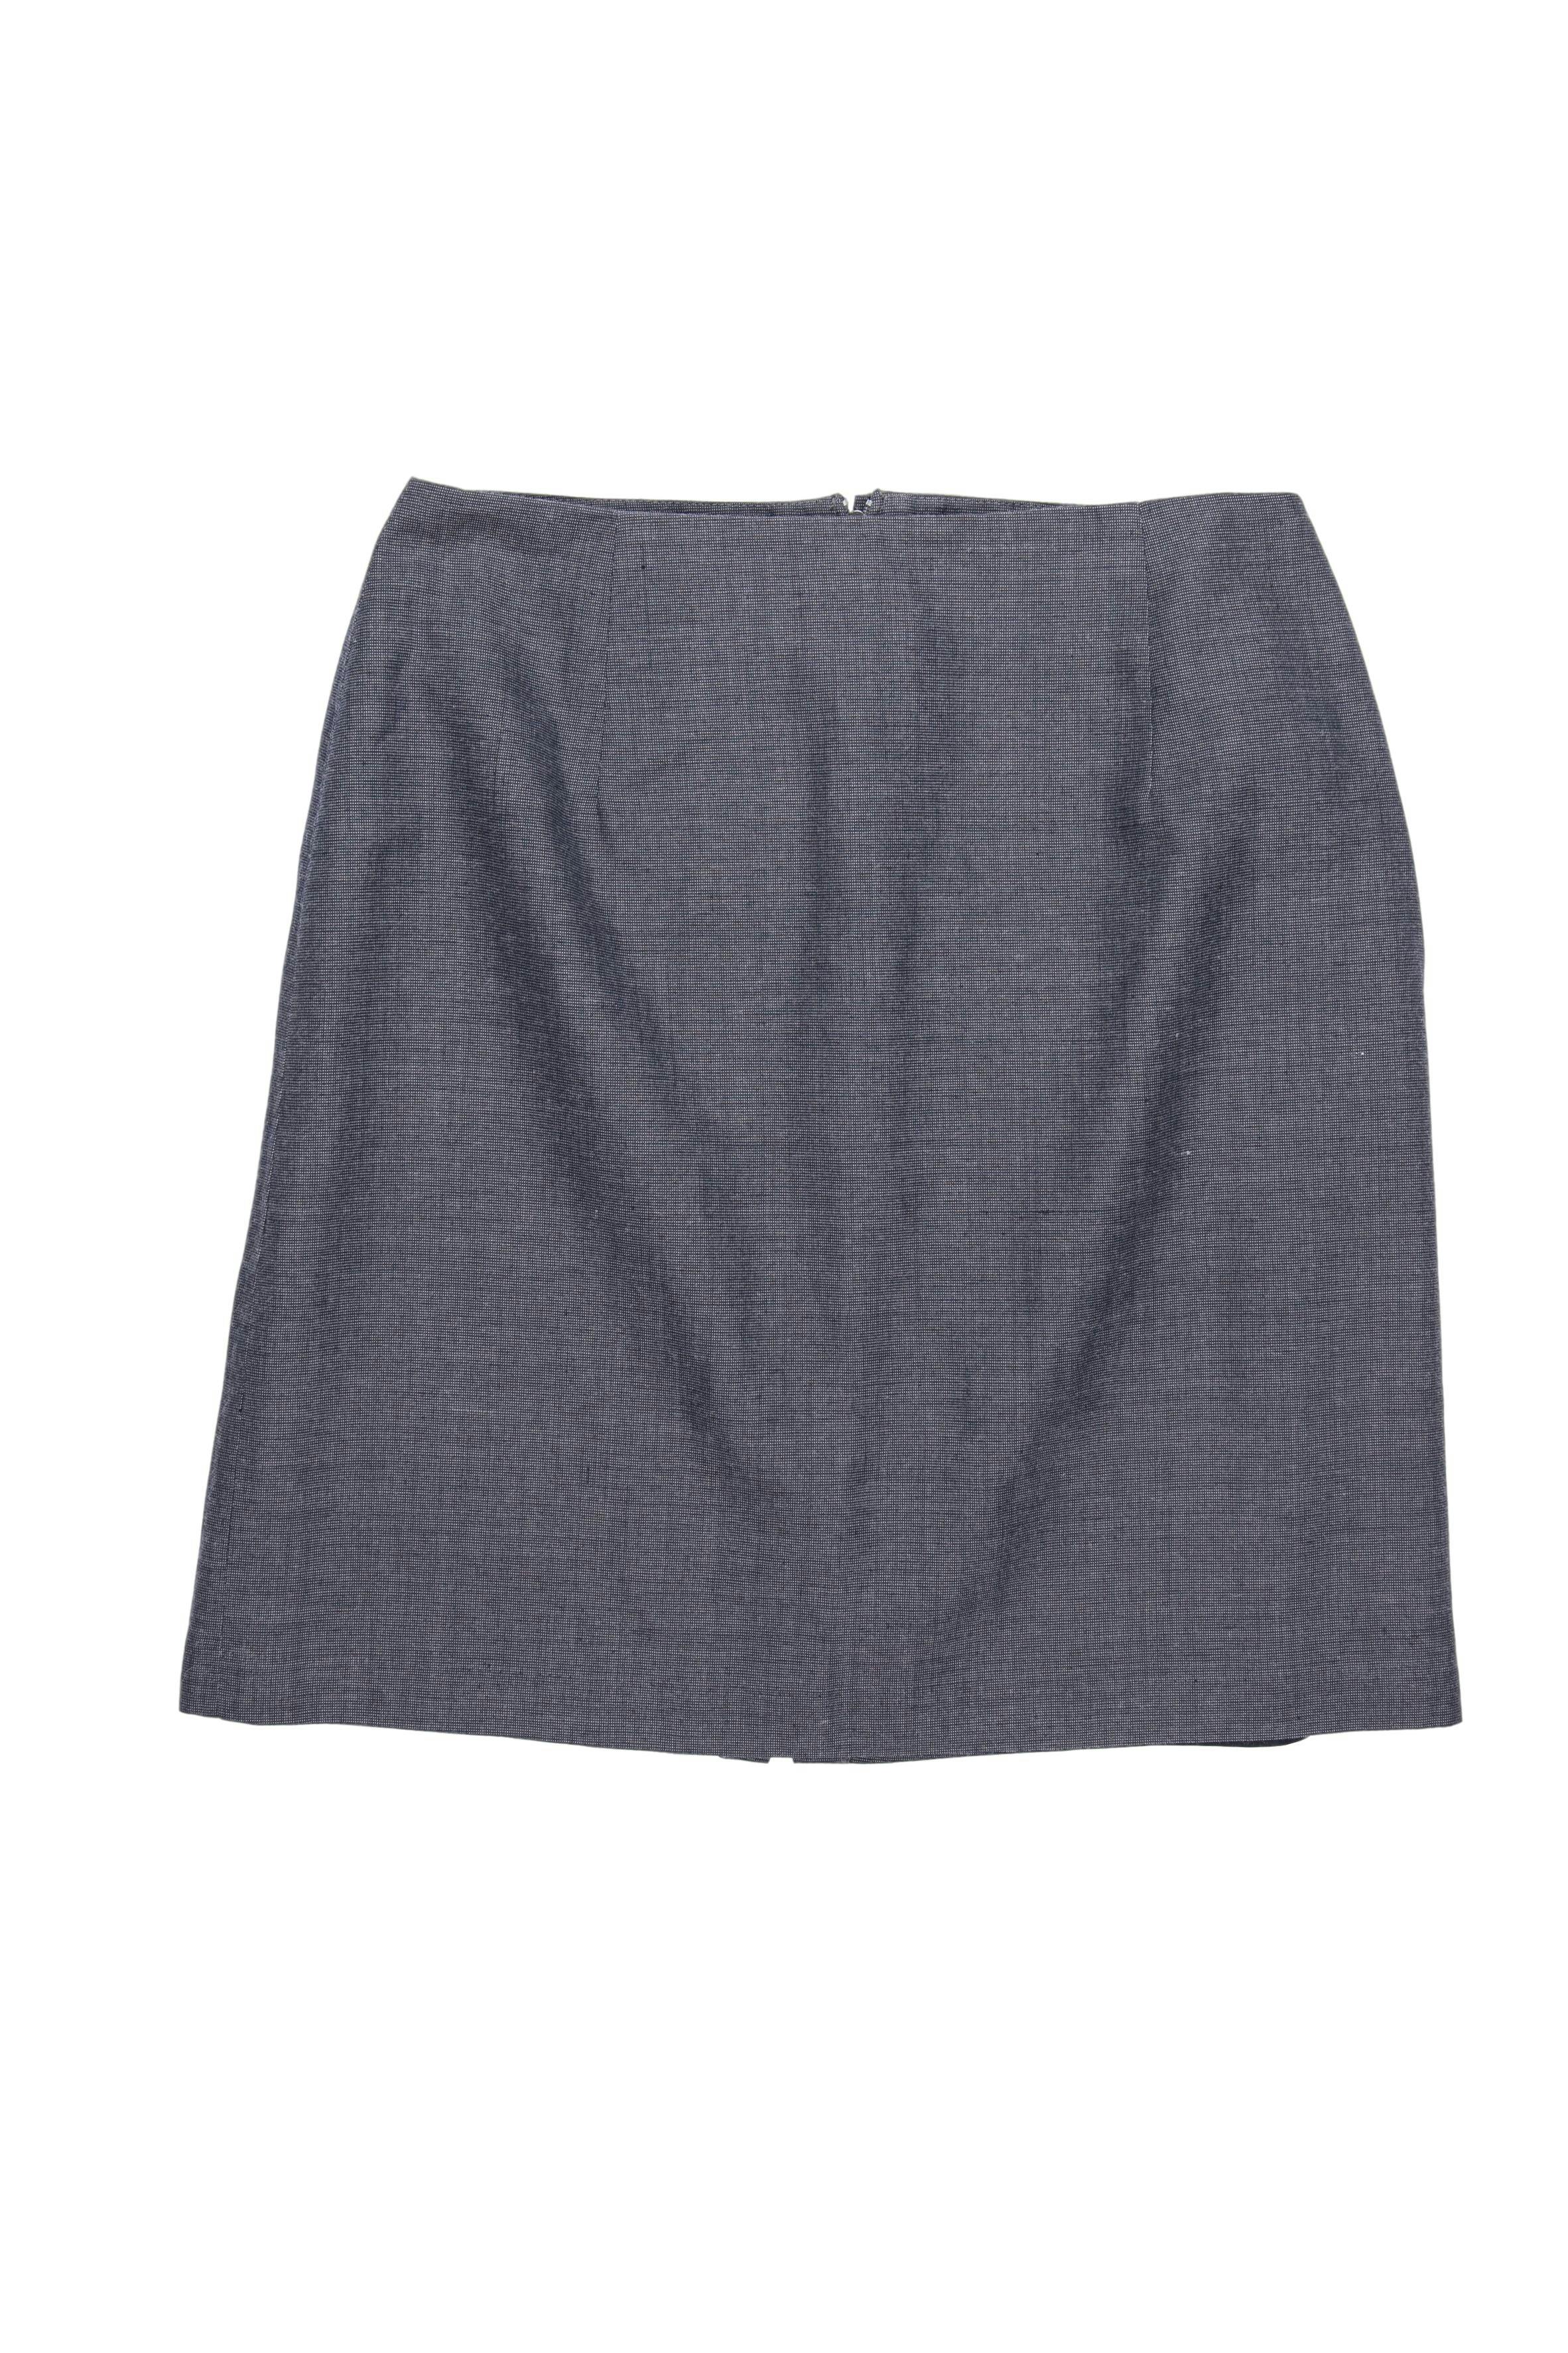 YAYA Falda recta, gris tipo sastre, forrada, con abertura y cierre posterior. Cintura 68 cm, largo 45 cm